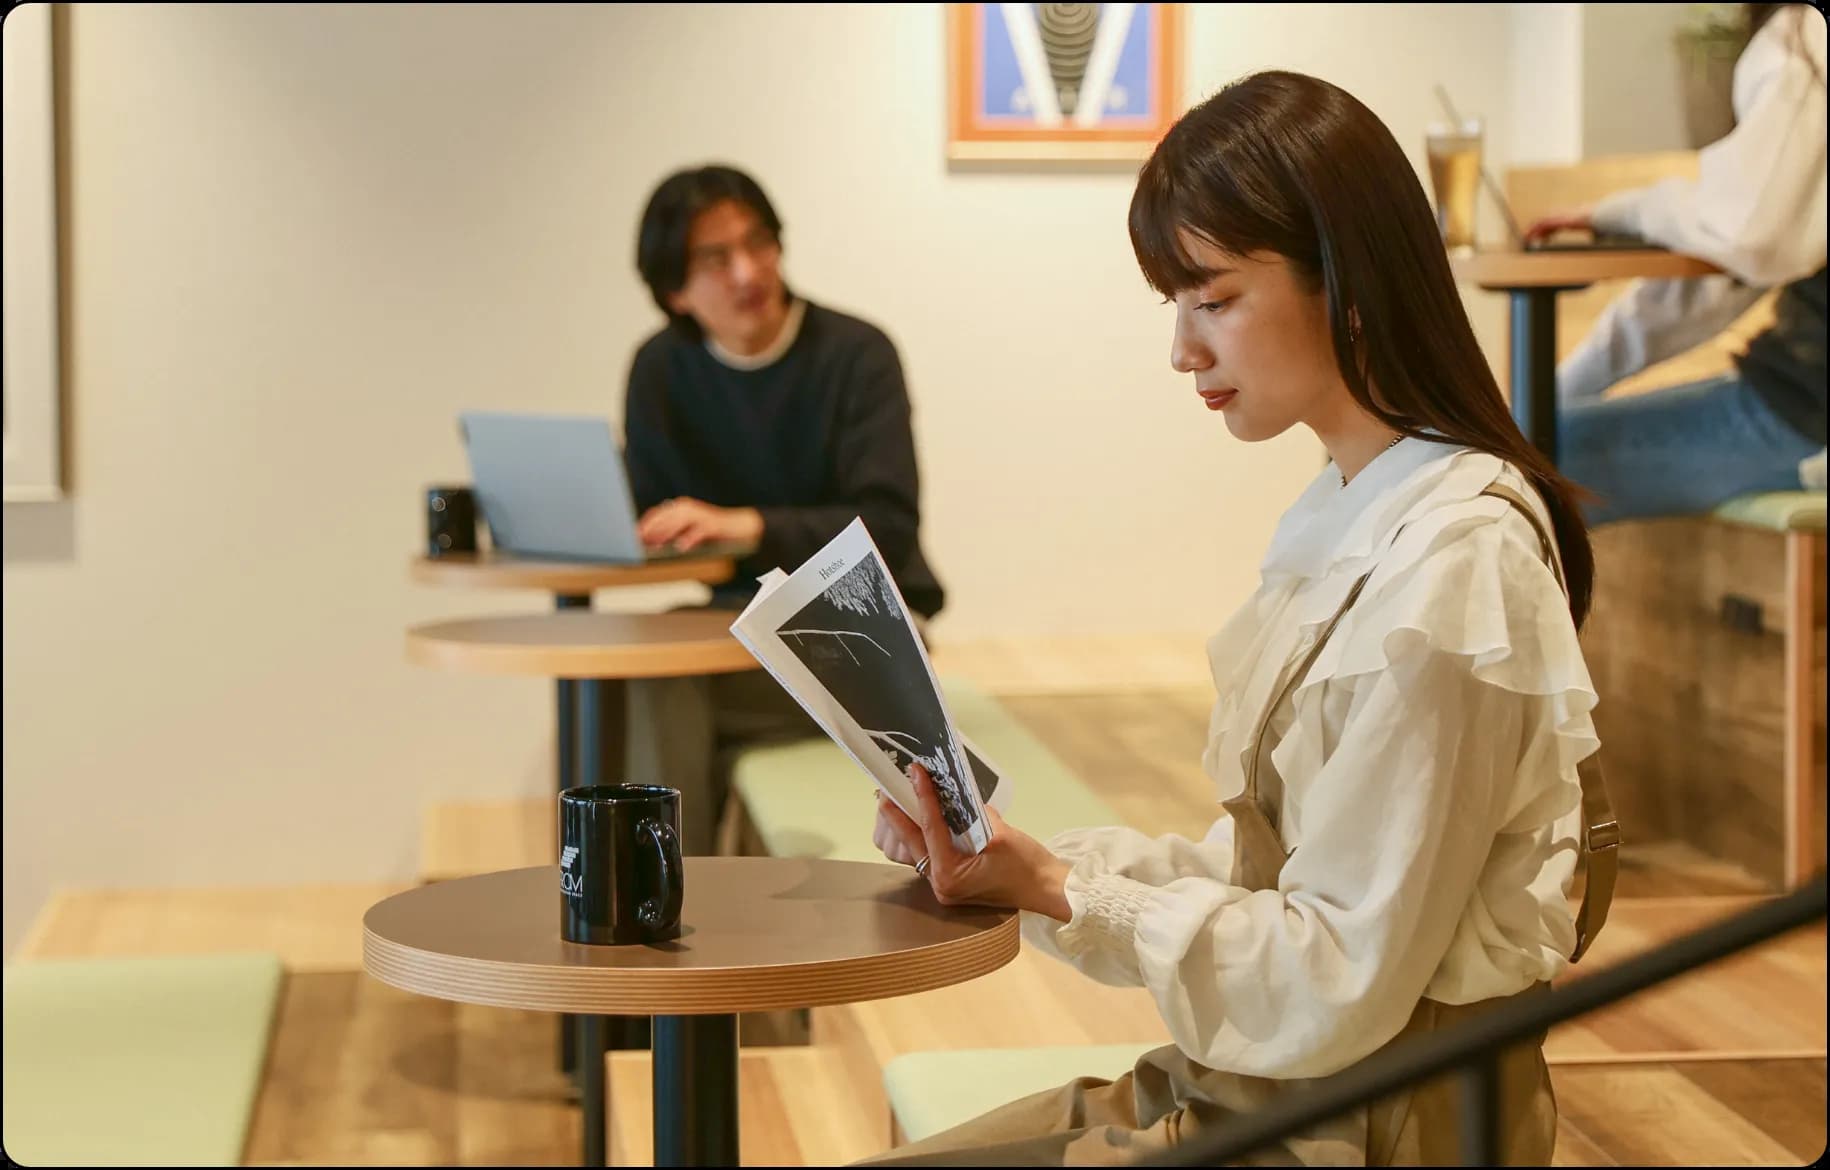 コーヒーを片手に読書している女性やその背後ではパソコンを操作している男性がいるなど作業に集中できるような雰囲気のある写真